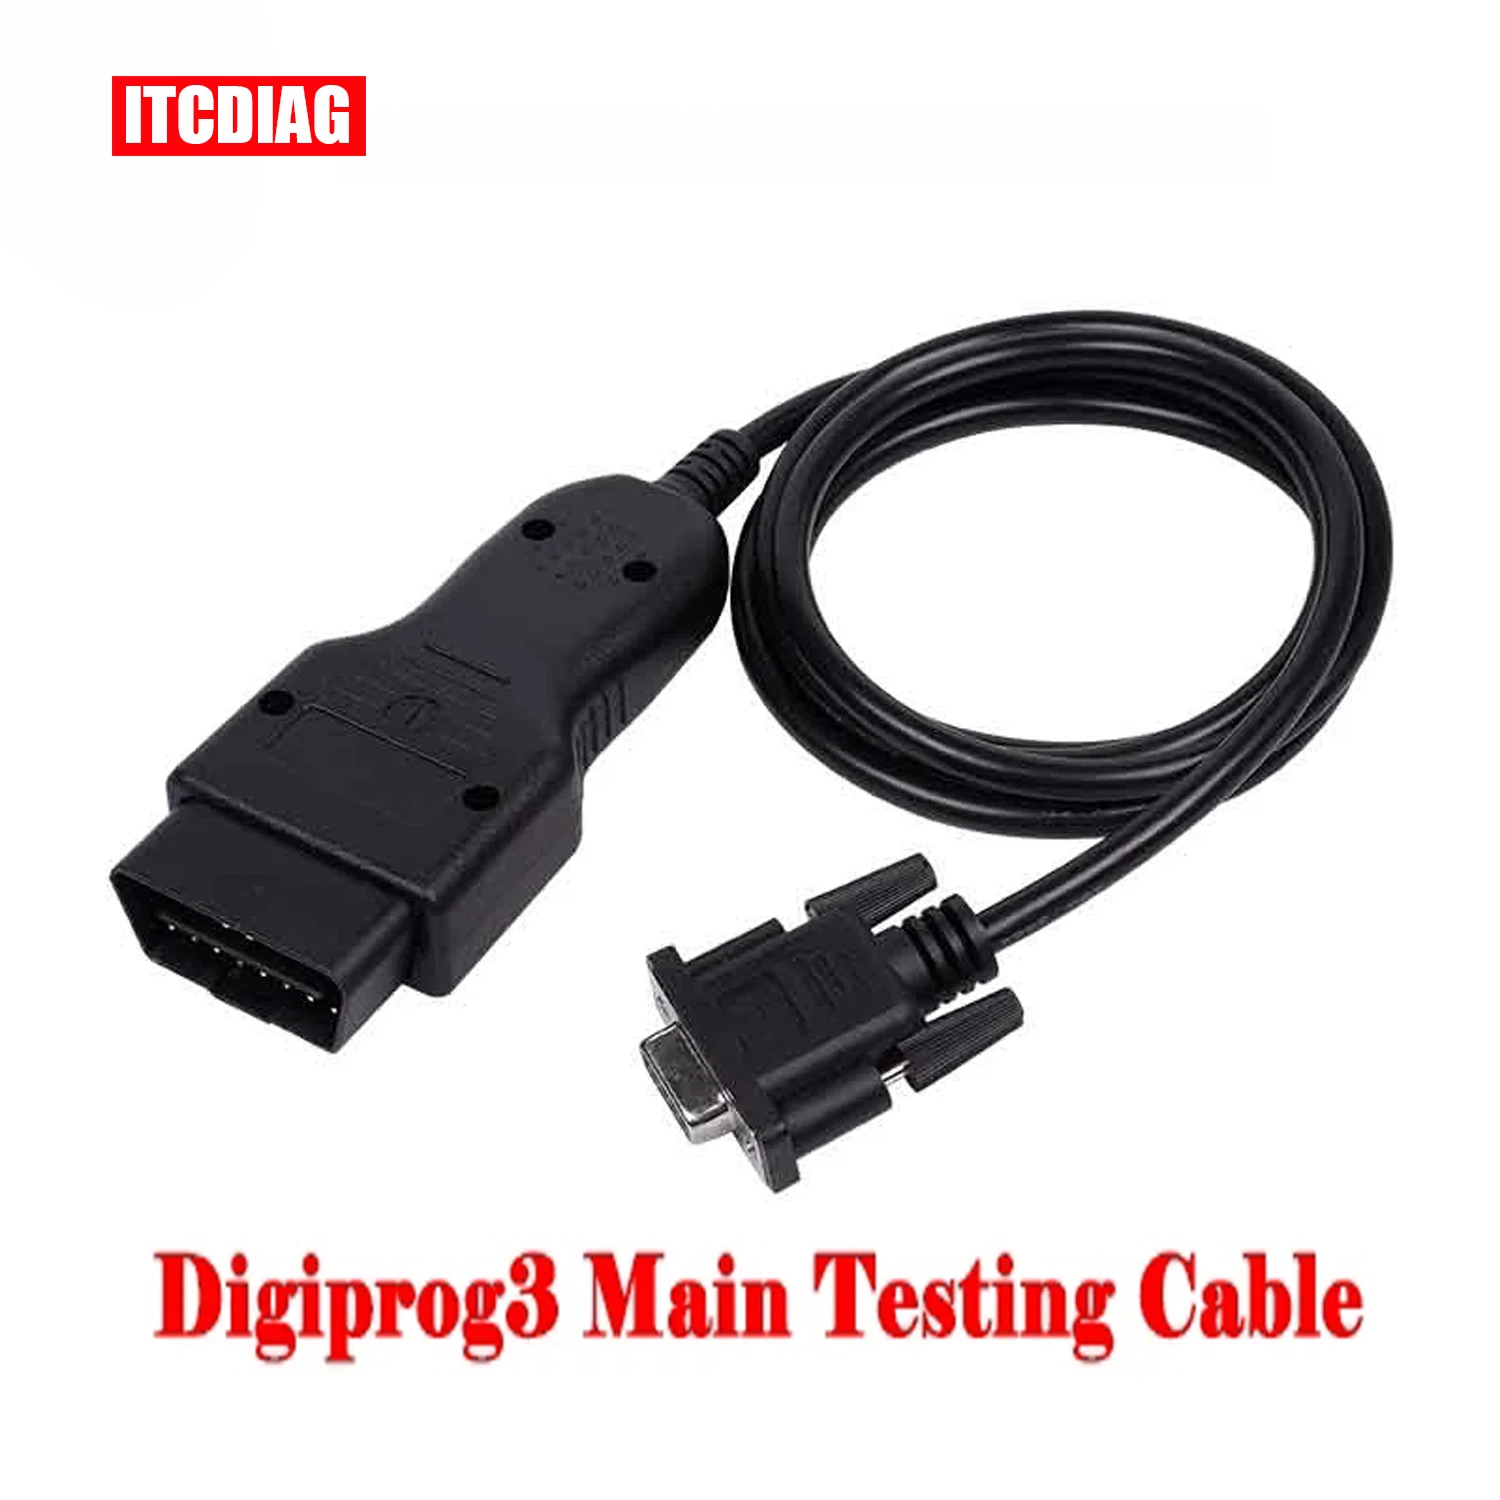 

Digiprog3 Main Testing Cable Digiprog III OBDII Cable digiprog 3 main cable with high quality